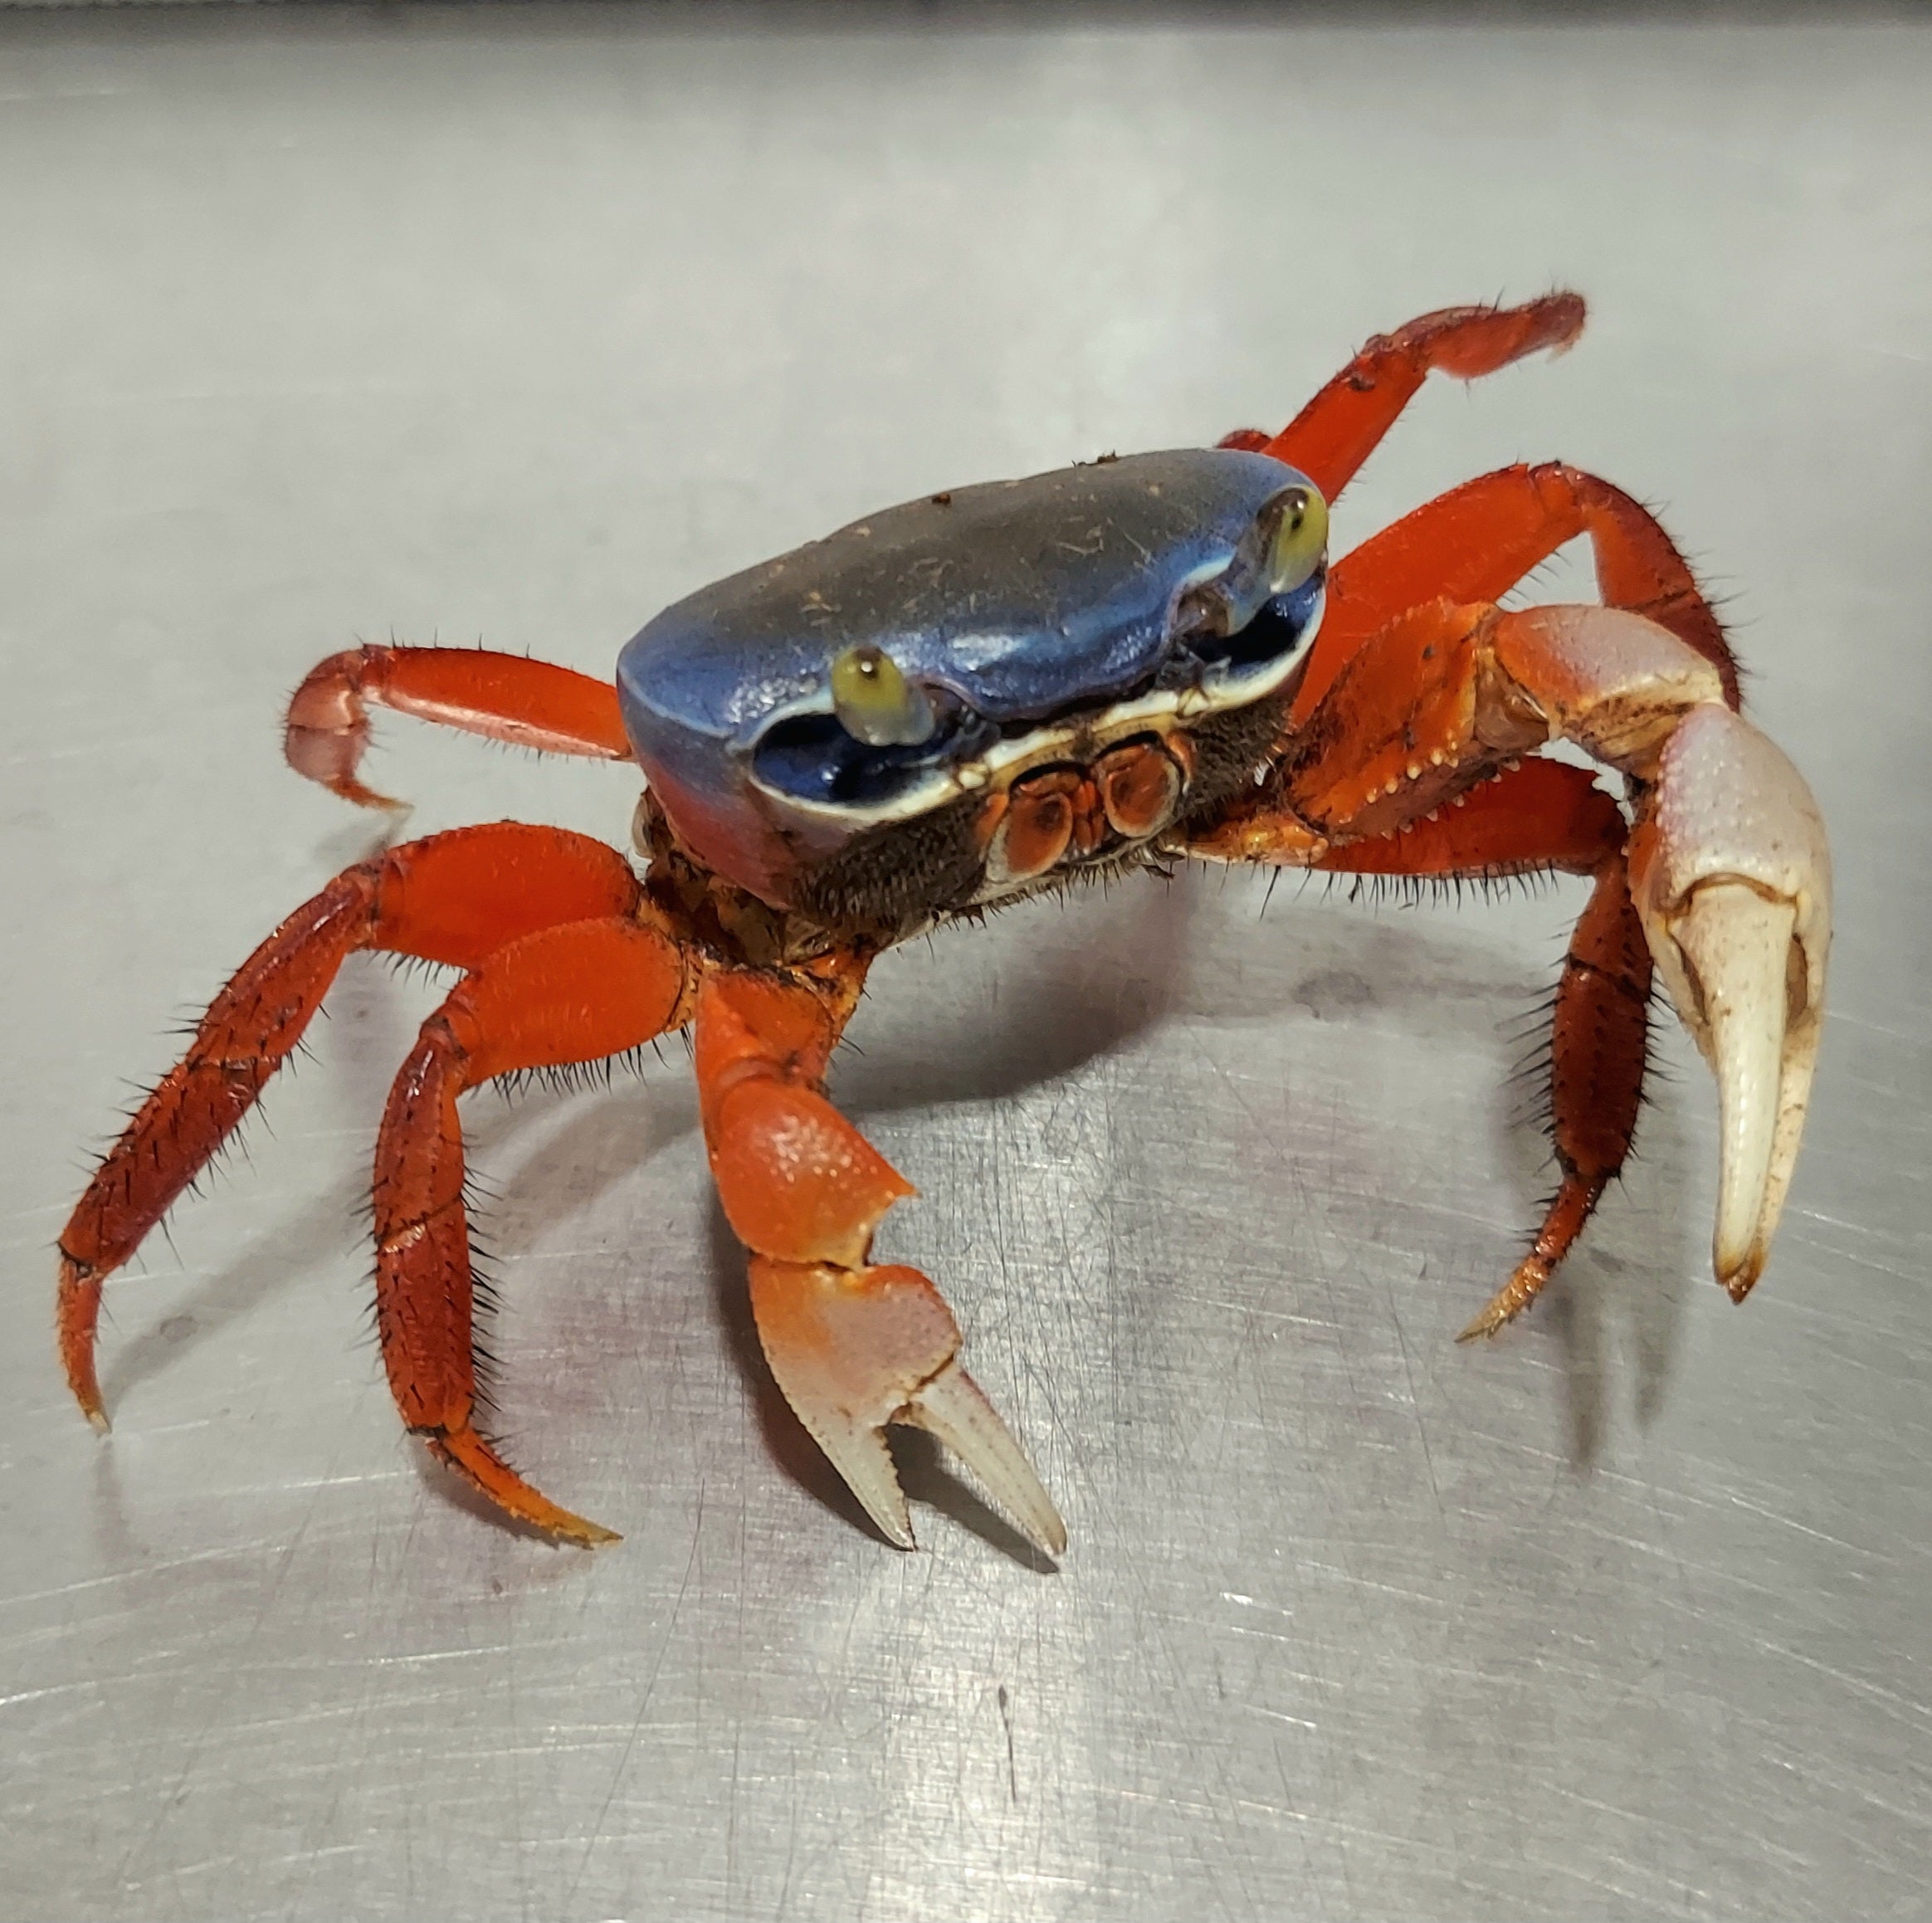 African Rainbow Land Crab (Cardisoma armatum)